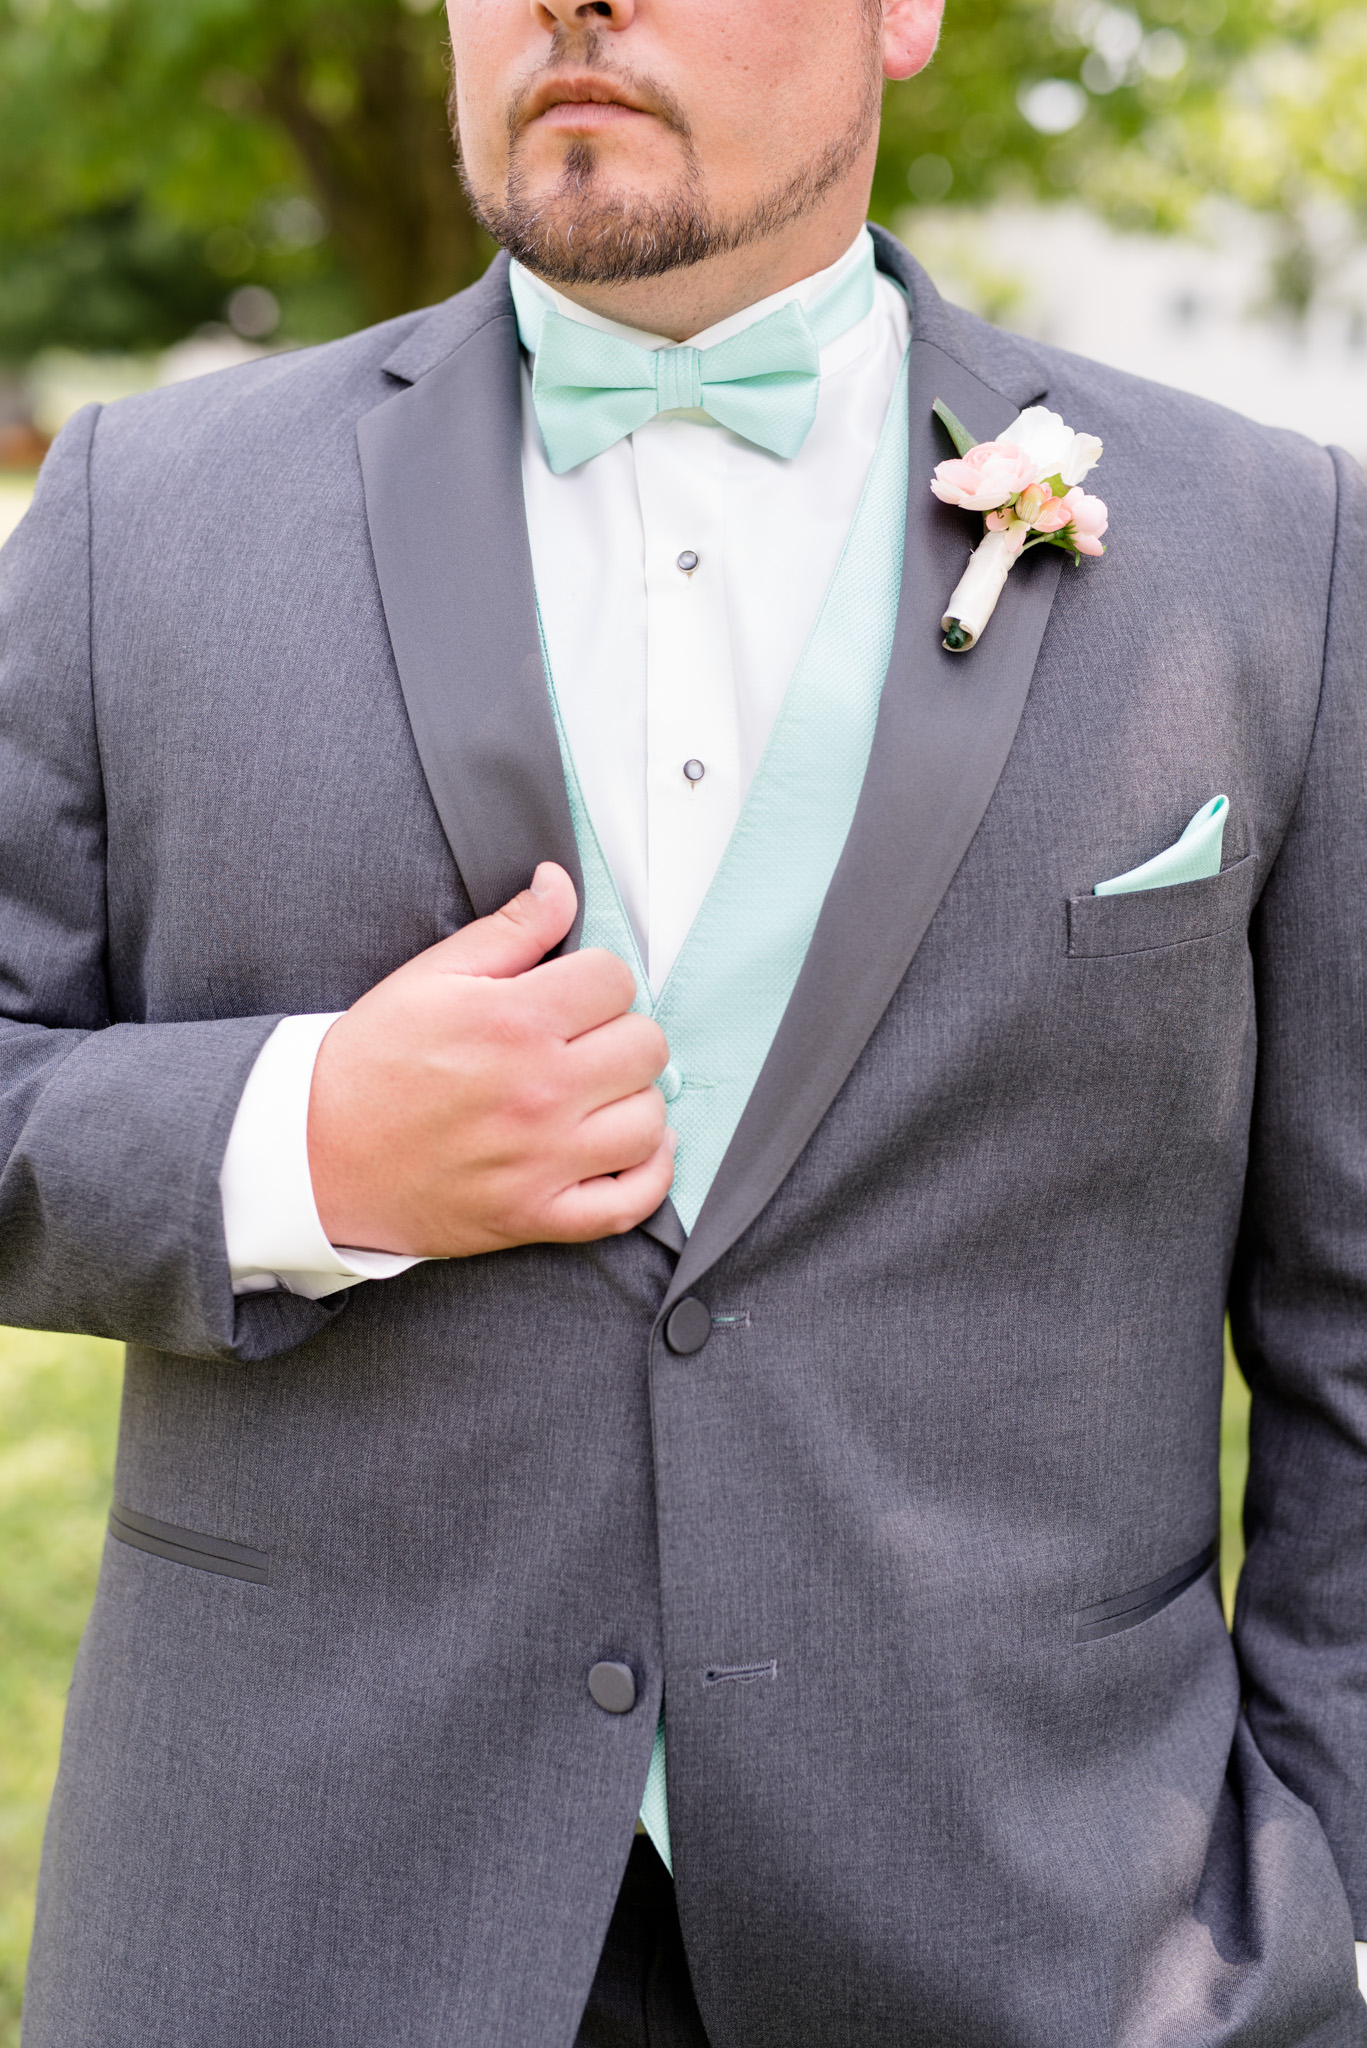 Closeup of groom's suit.